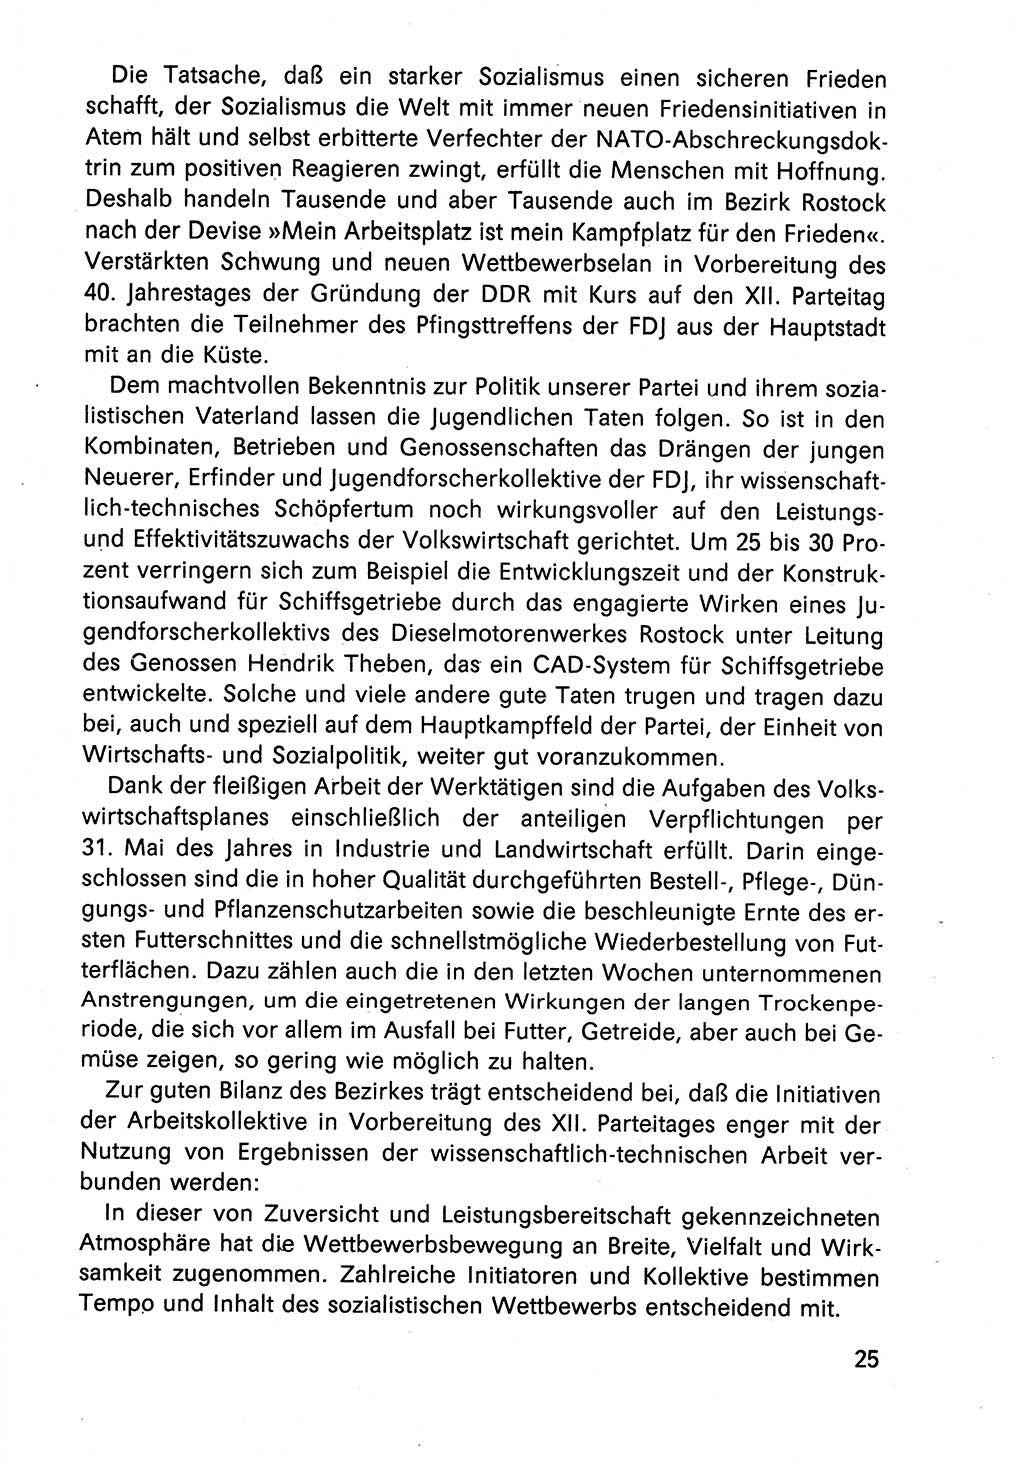 Diskussionsreden, 8. Tagung des ZK (Zentralkomitee) der SED (Sozialistische Einheitspartei Deutschlands) [Deutsche Demokratische Republik (DDR)] 1989, Seite 25 (Disk.-Red. 8. Tg. ZK SED DDR 1989, S. 25)